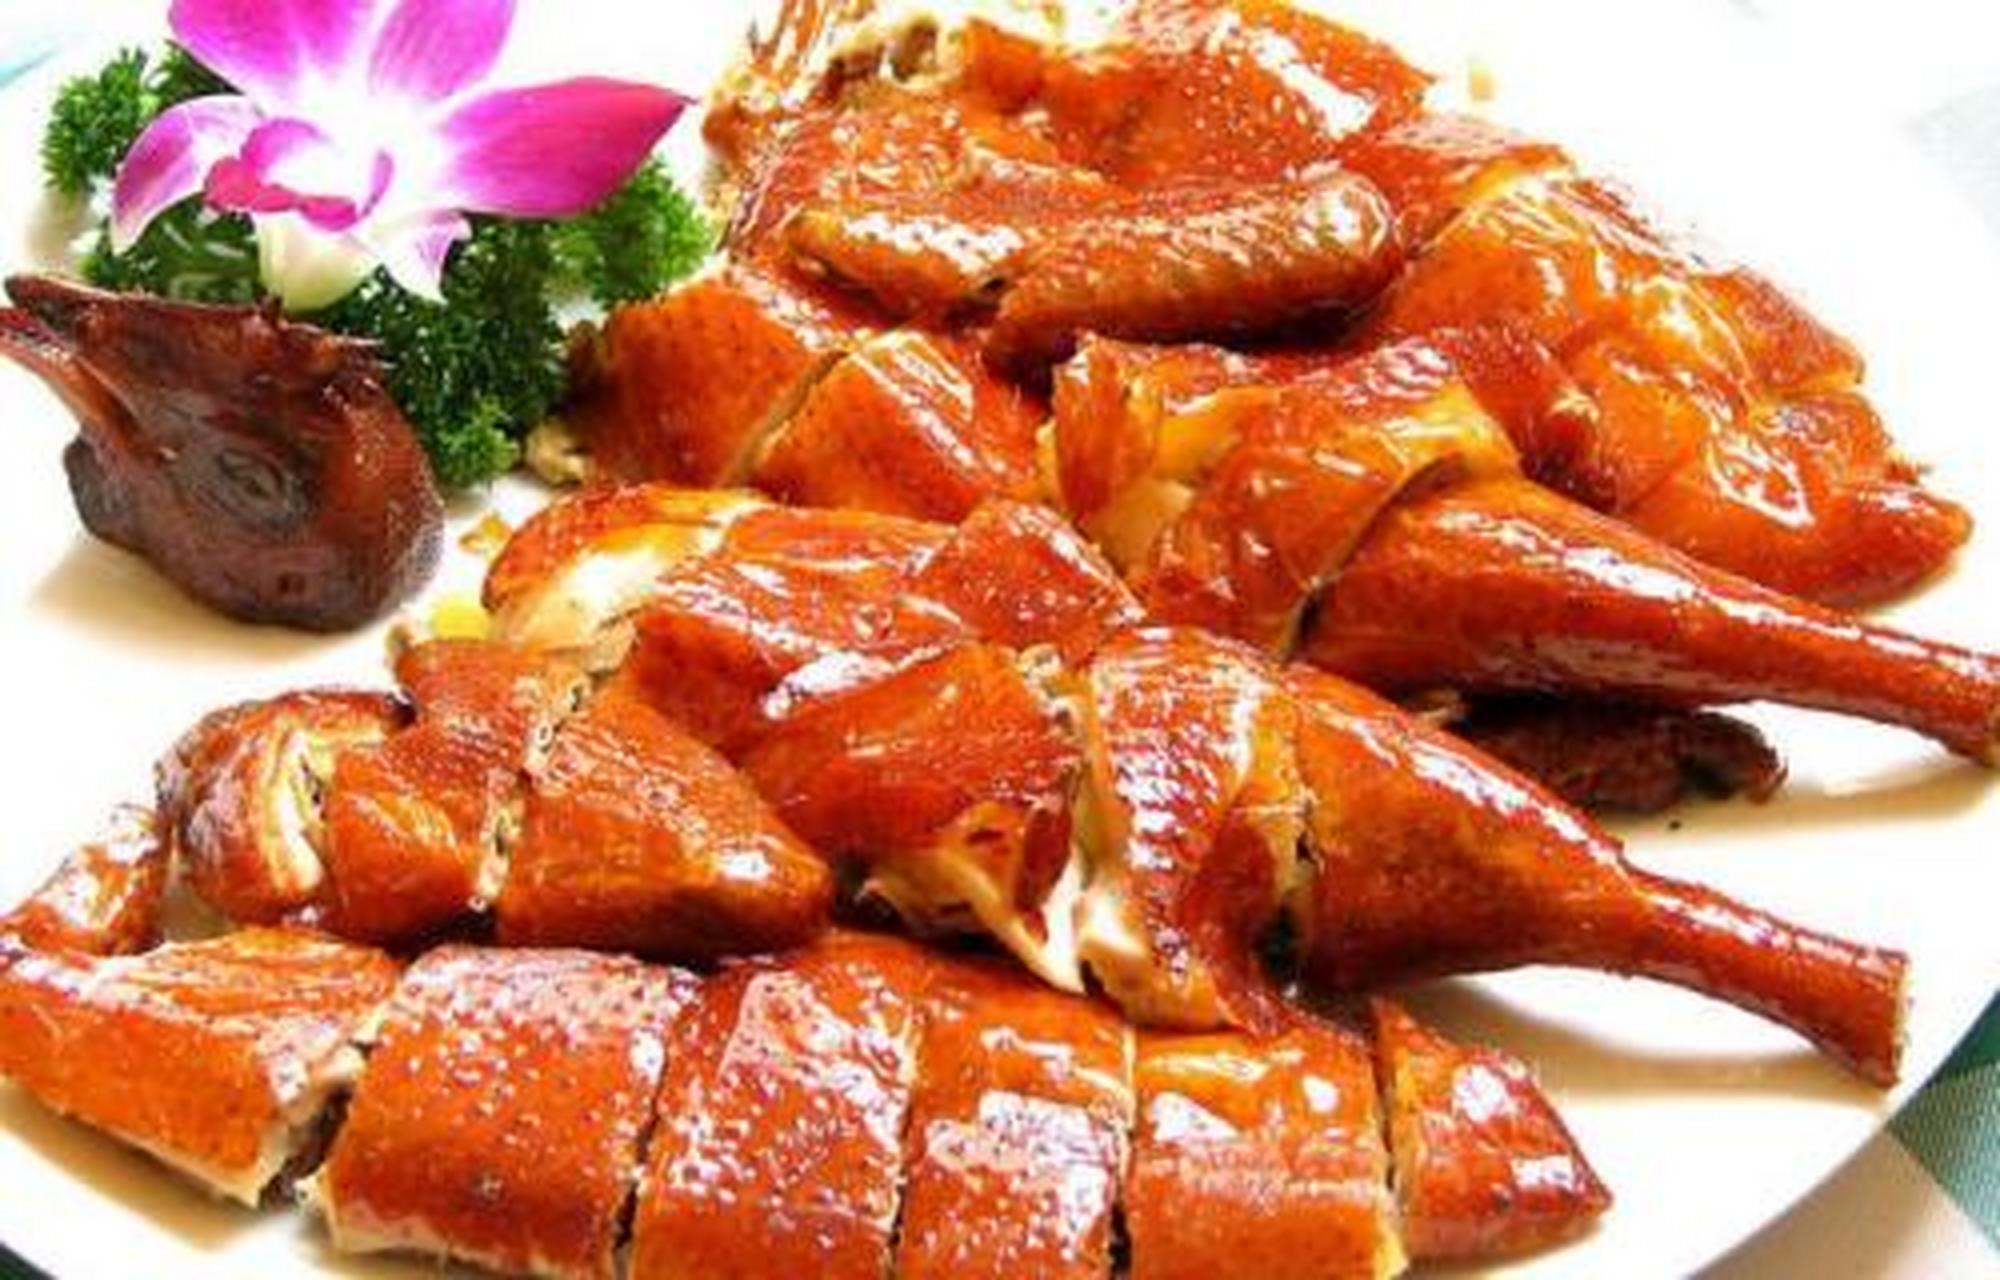 香酥鸡,是崇阳新创的风味名菜之一